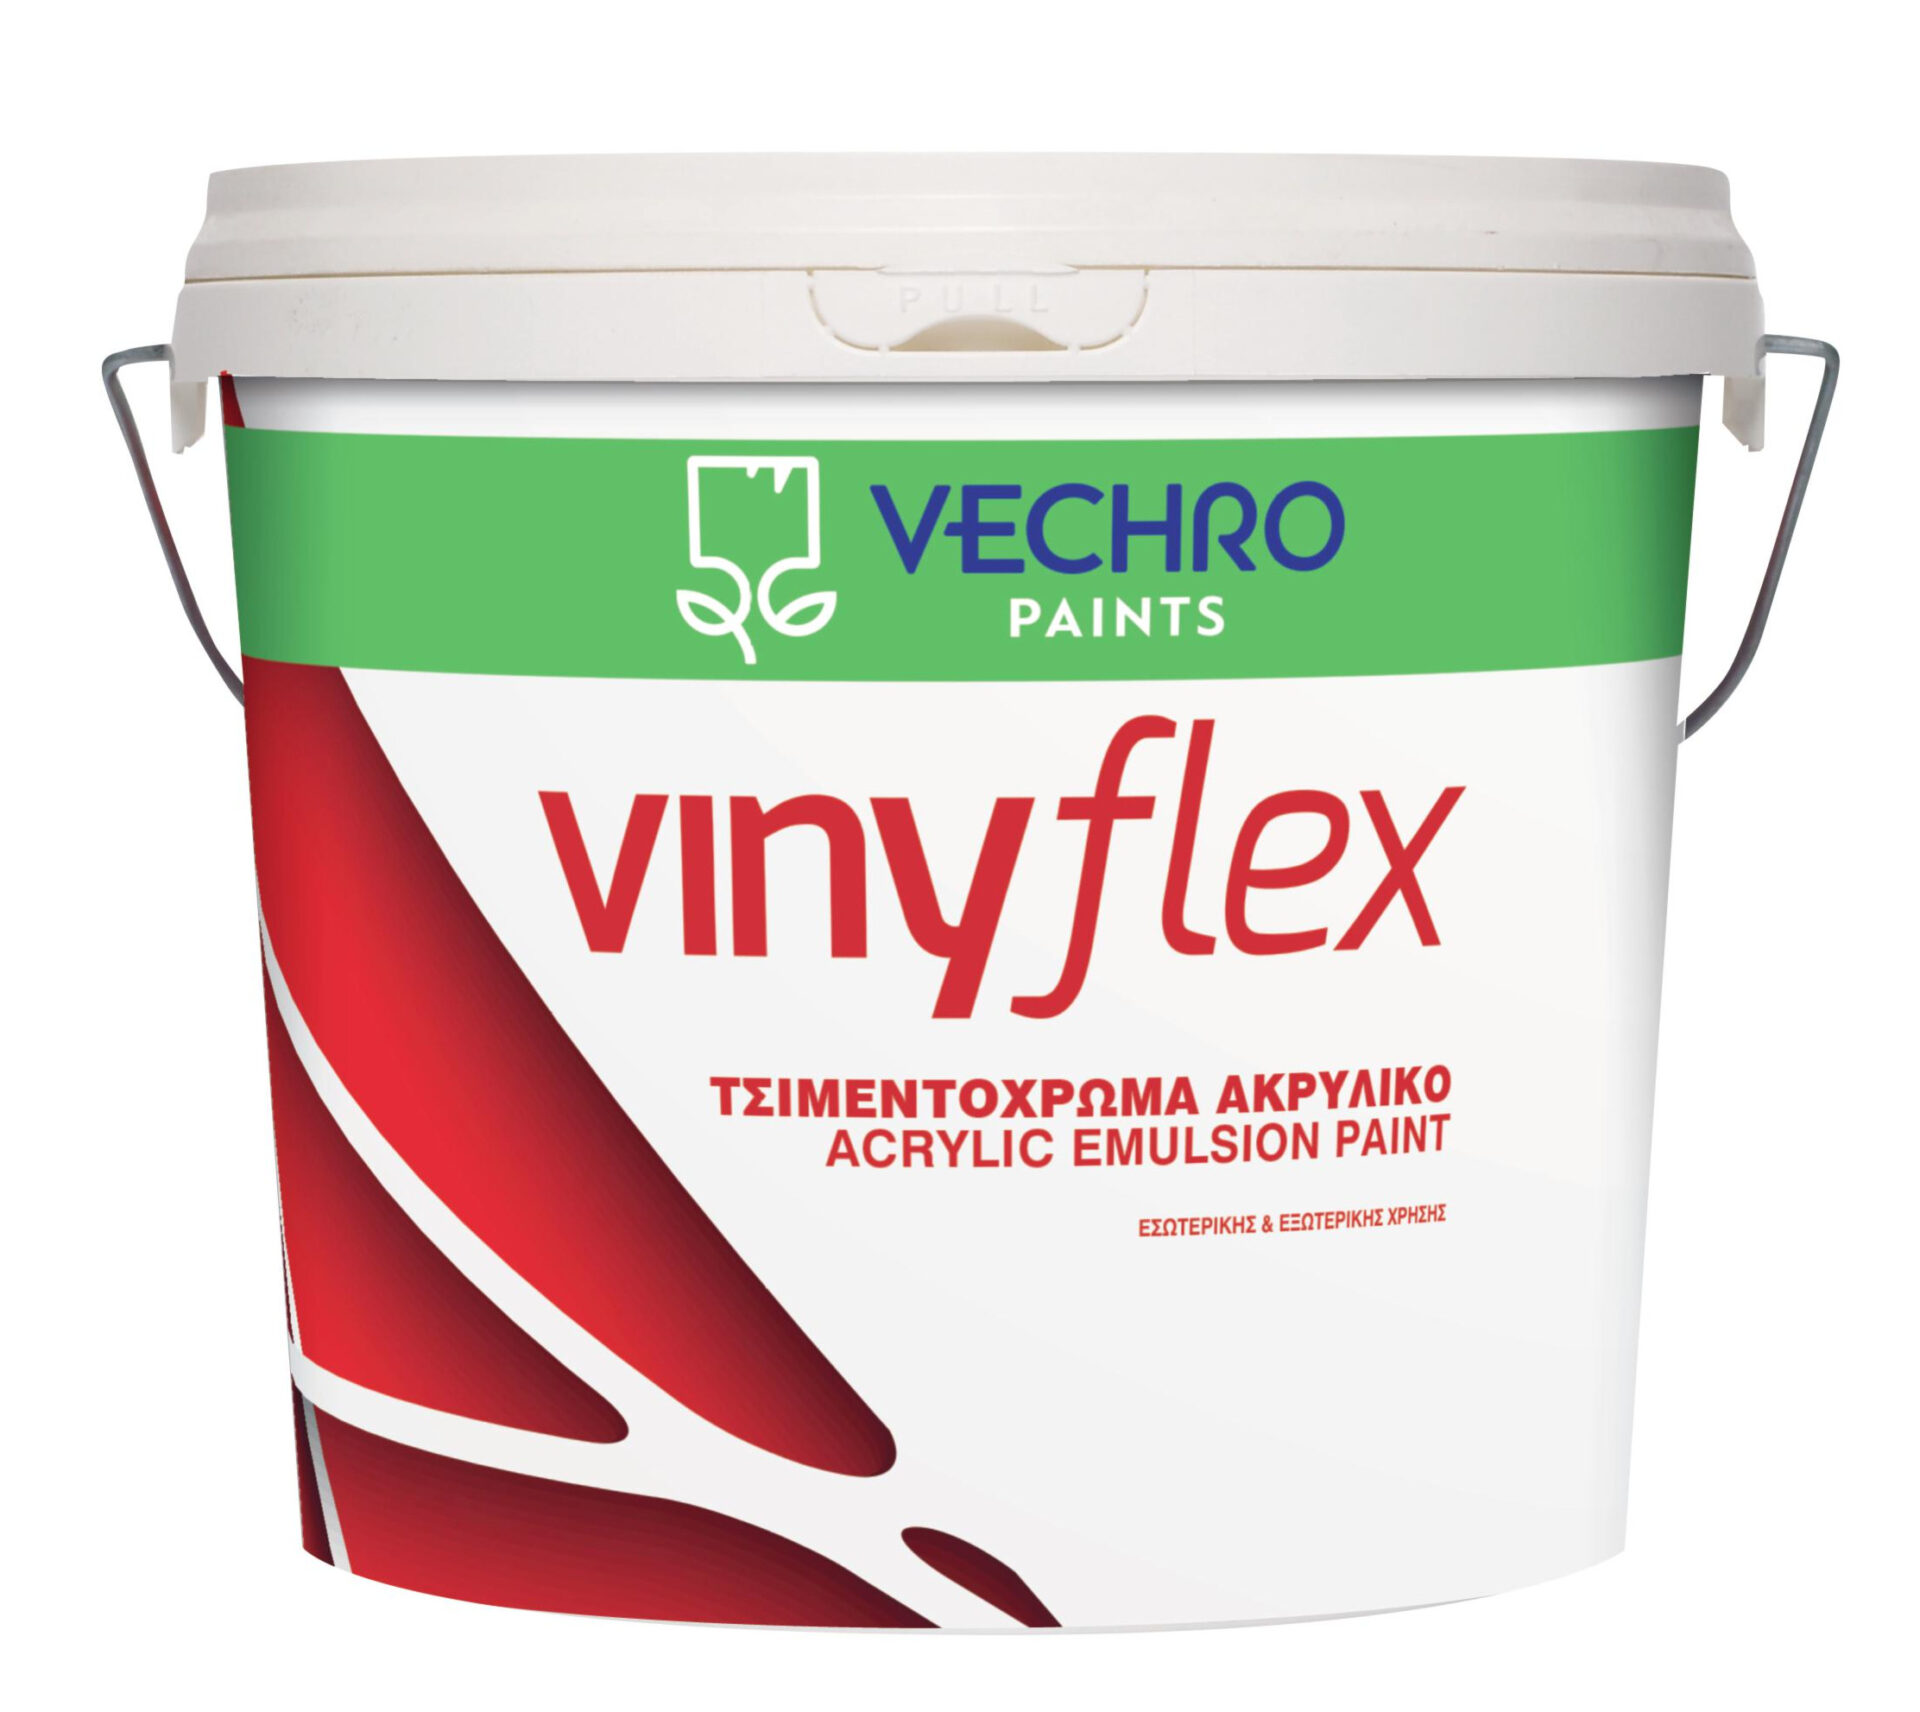 Ακρυλικό χρώμα Vinyflex Vechro